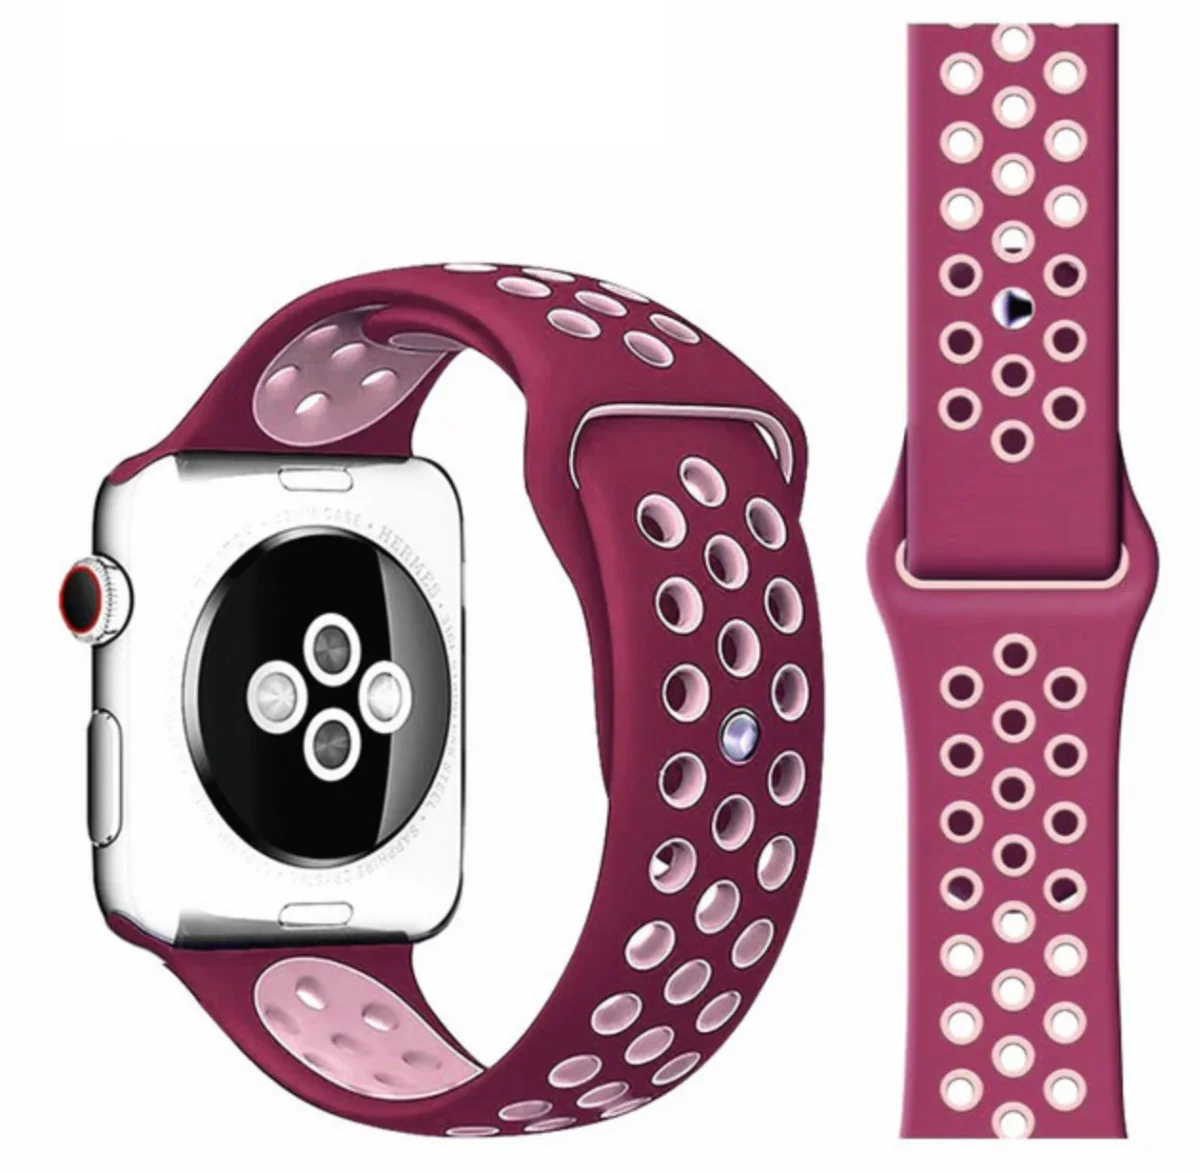 Řemínek iMore SPORT pro Apple Watch Series 1/2/3 (38mm) - Vínový/Růžový